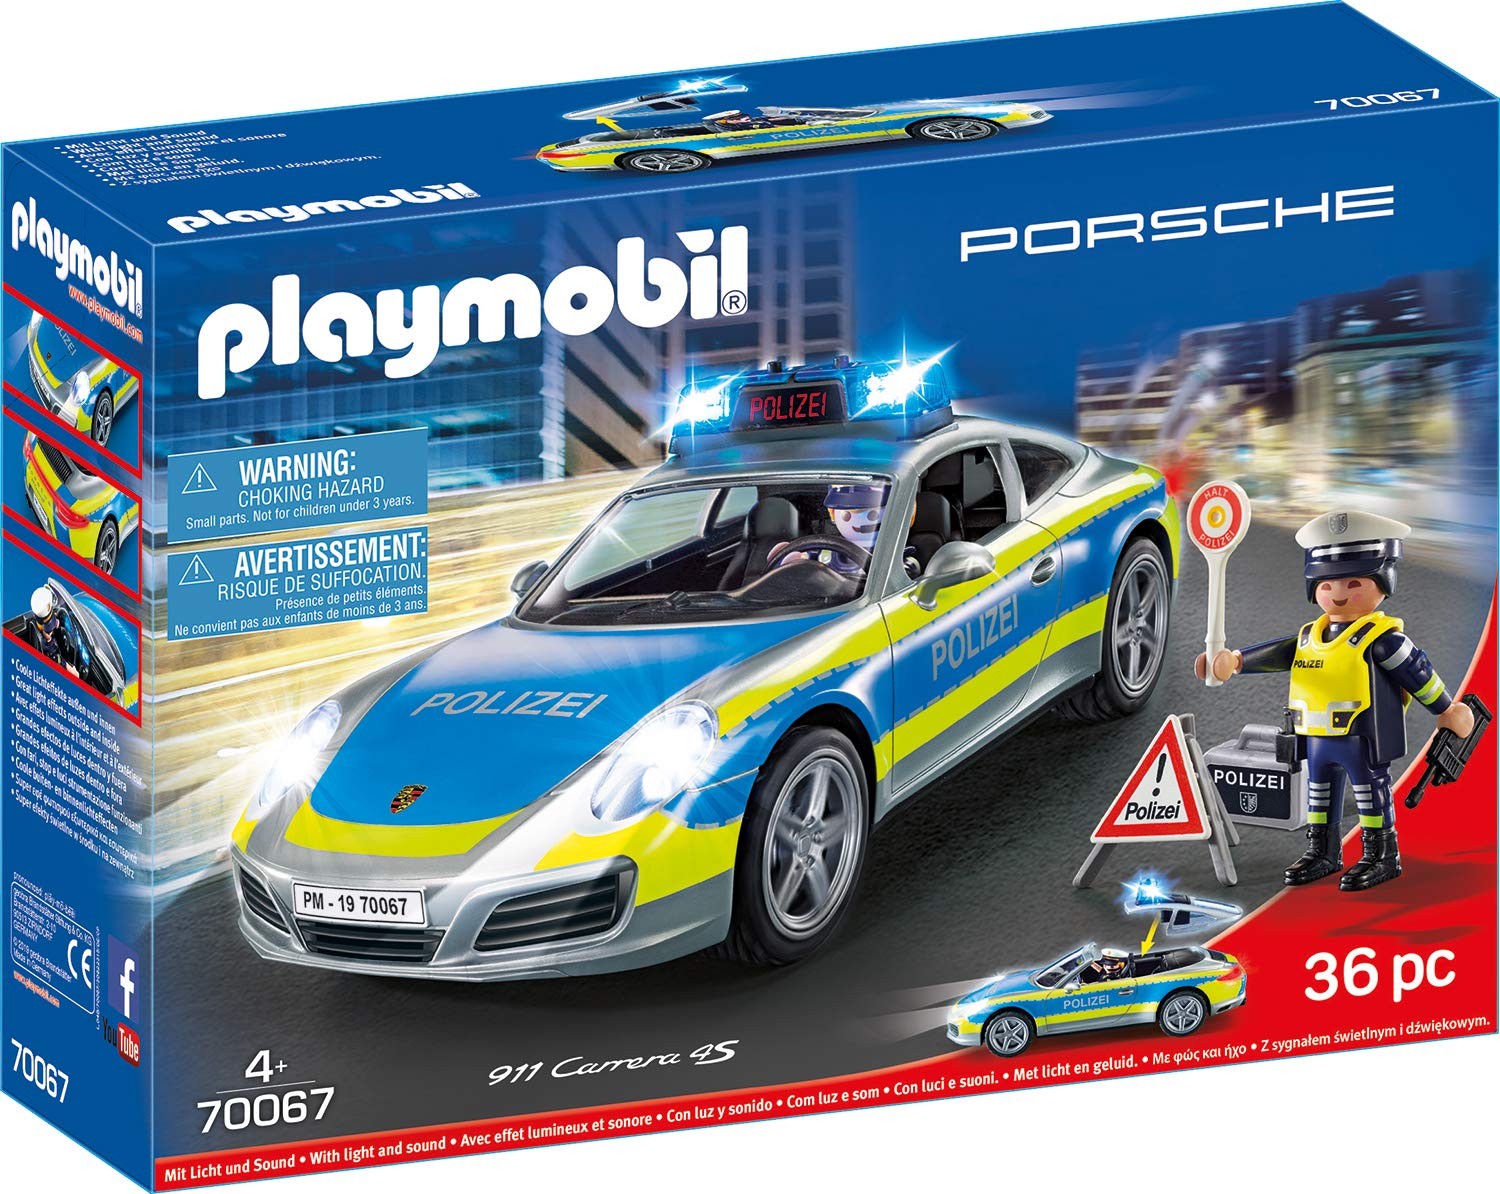 Playmobil City Action Porsche Carrera S Police Multicoloured